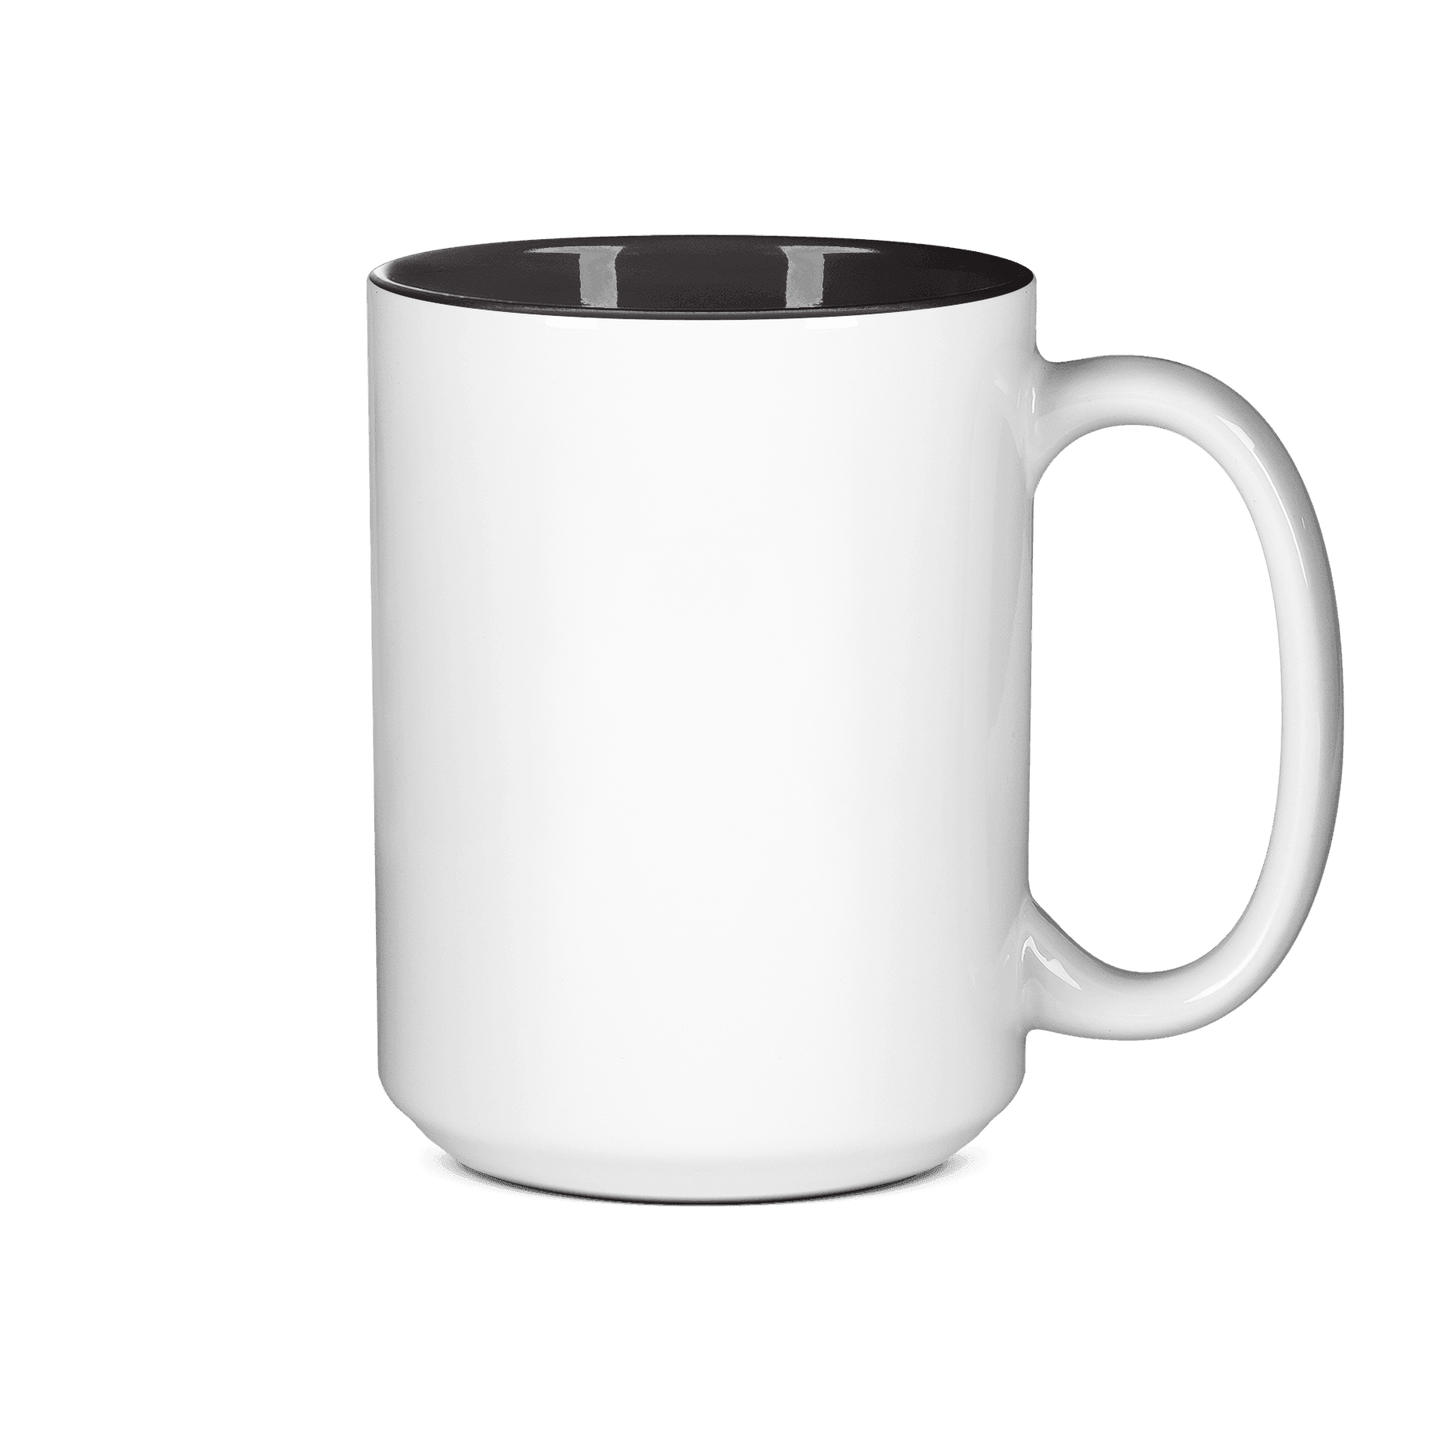 15 oz Two Tone Colored Mug - Black , Accent Mugs , PHOTO USA